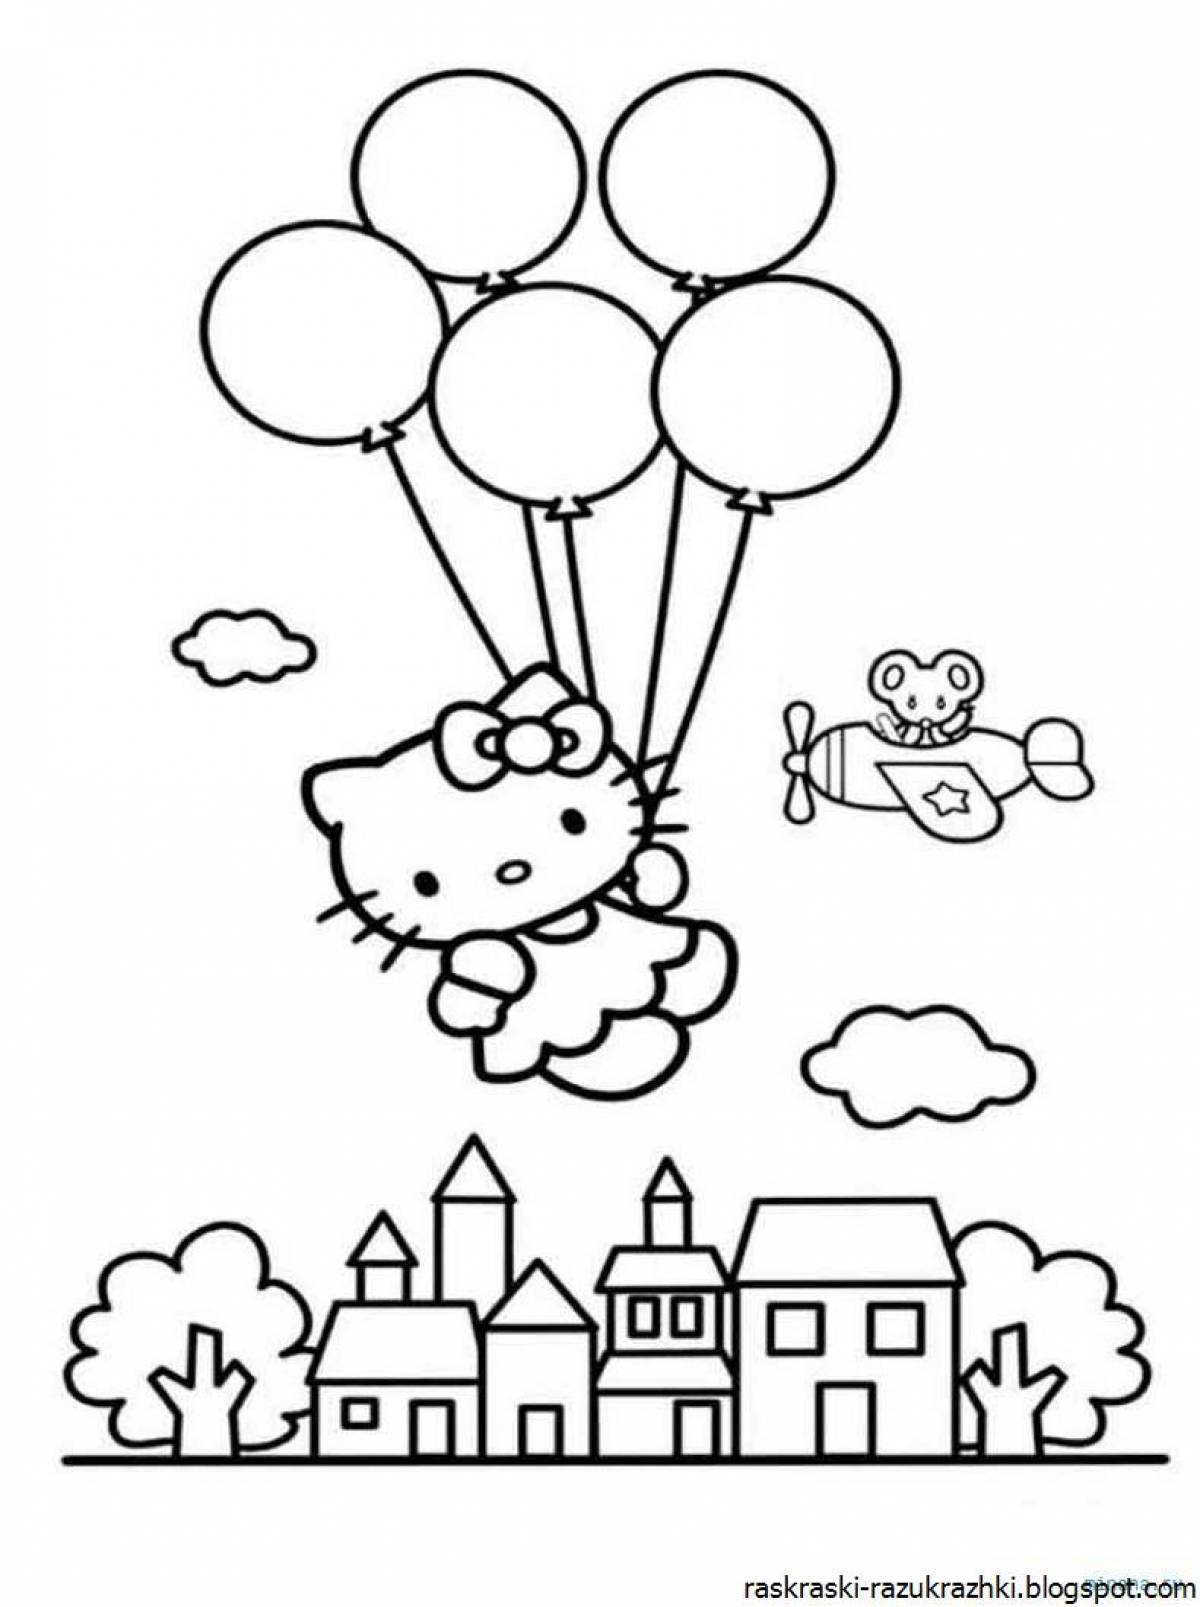 Balloons for children #2